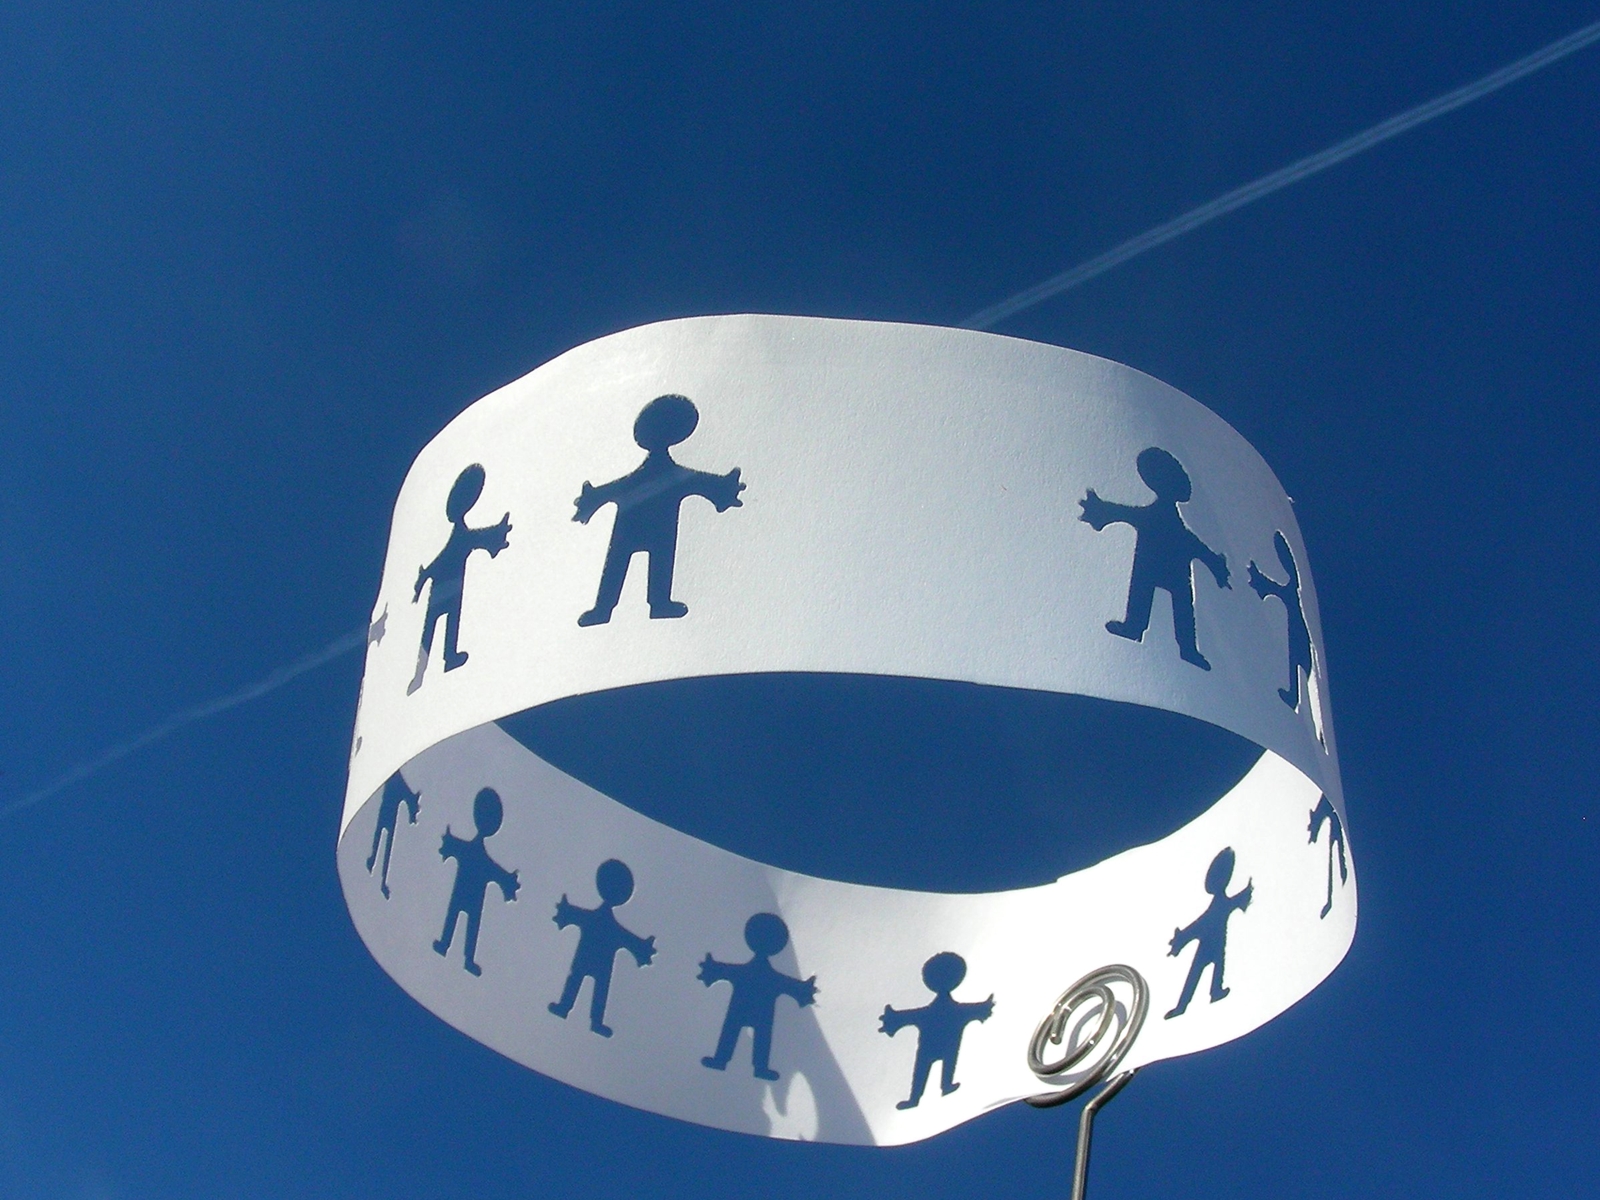 Papierband mit ausgestantzten Figuren vor blauem Himmel